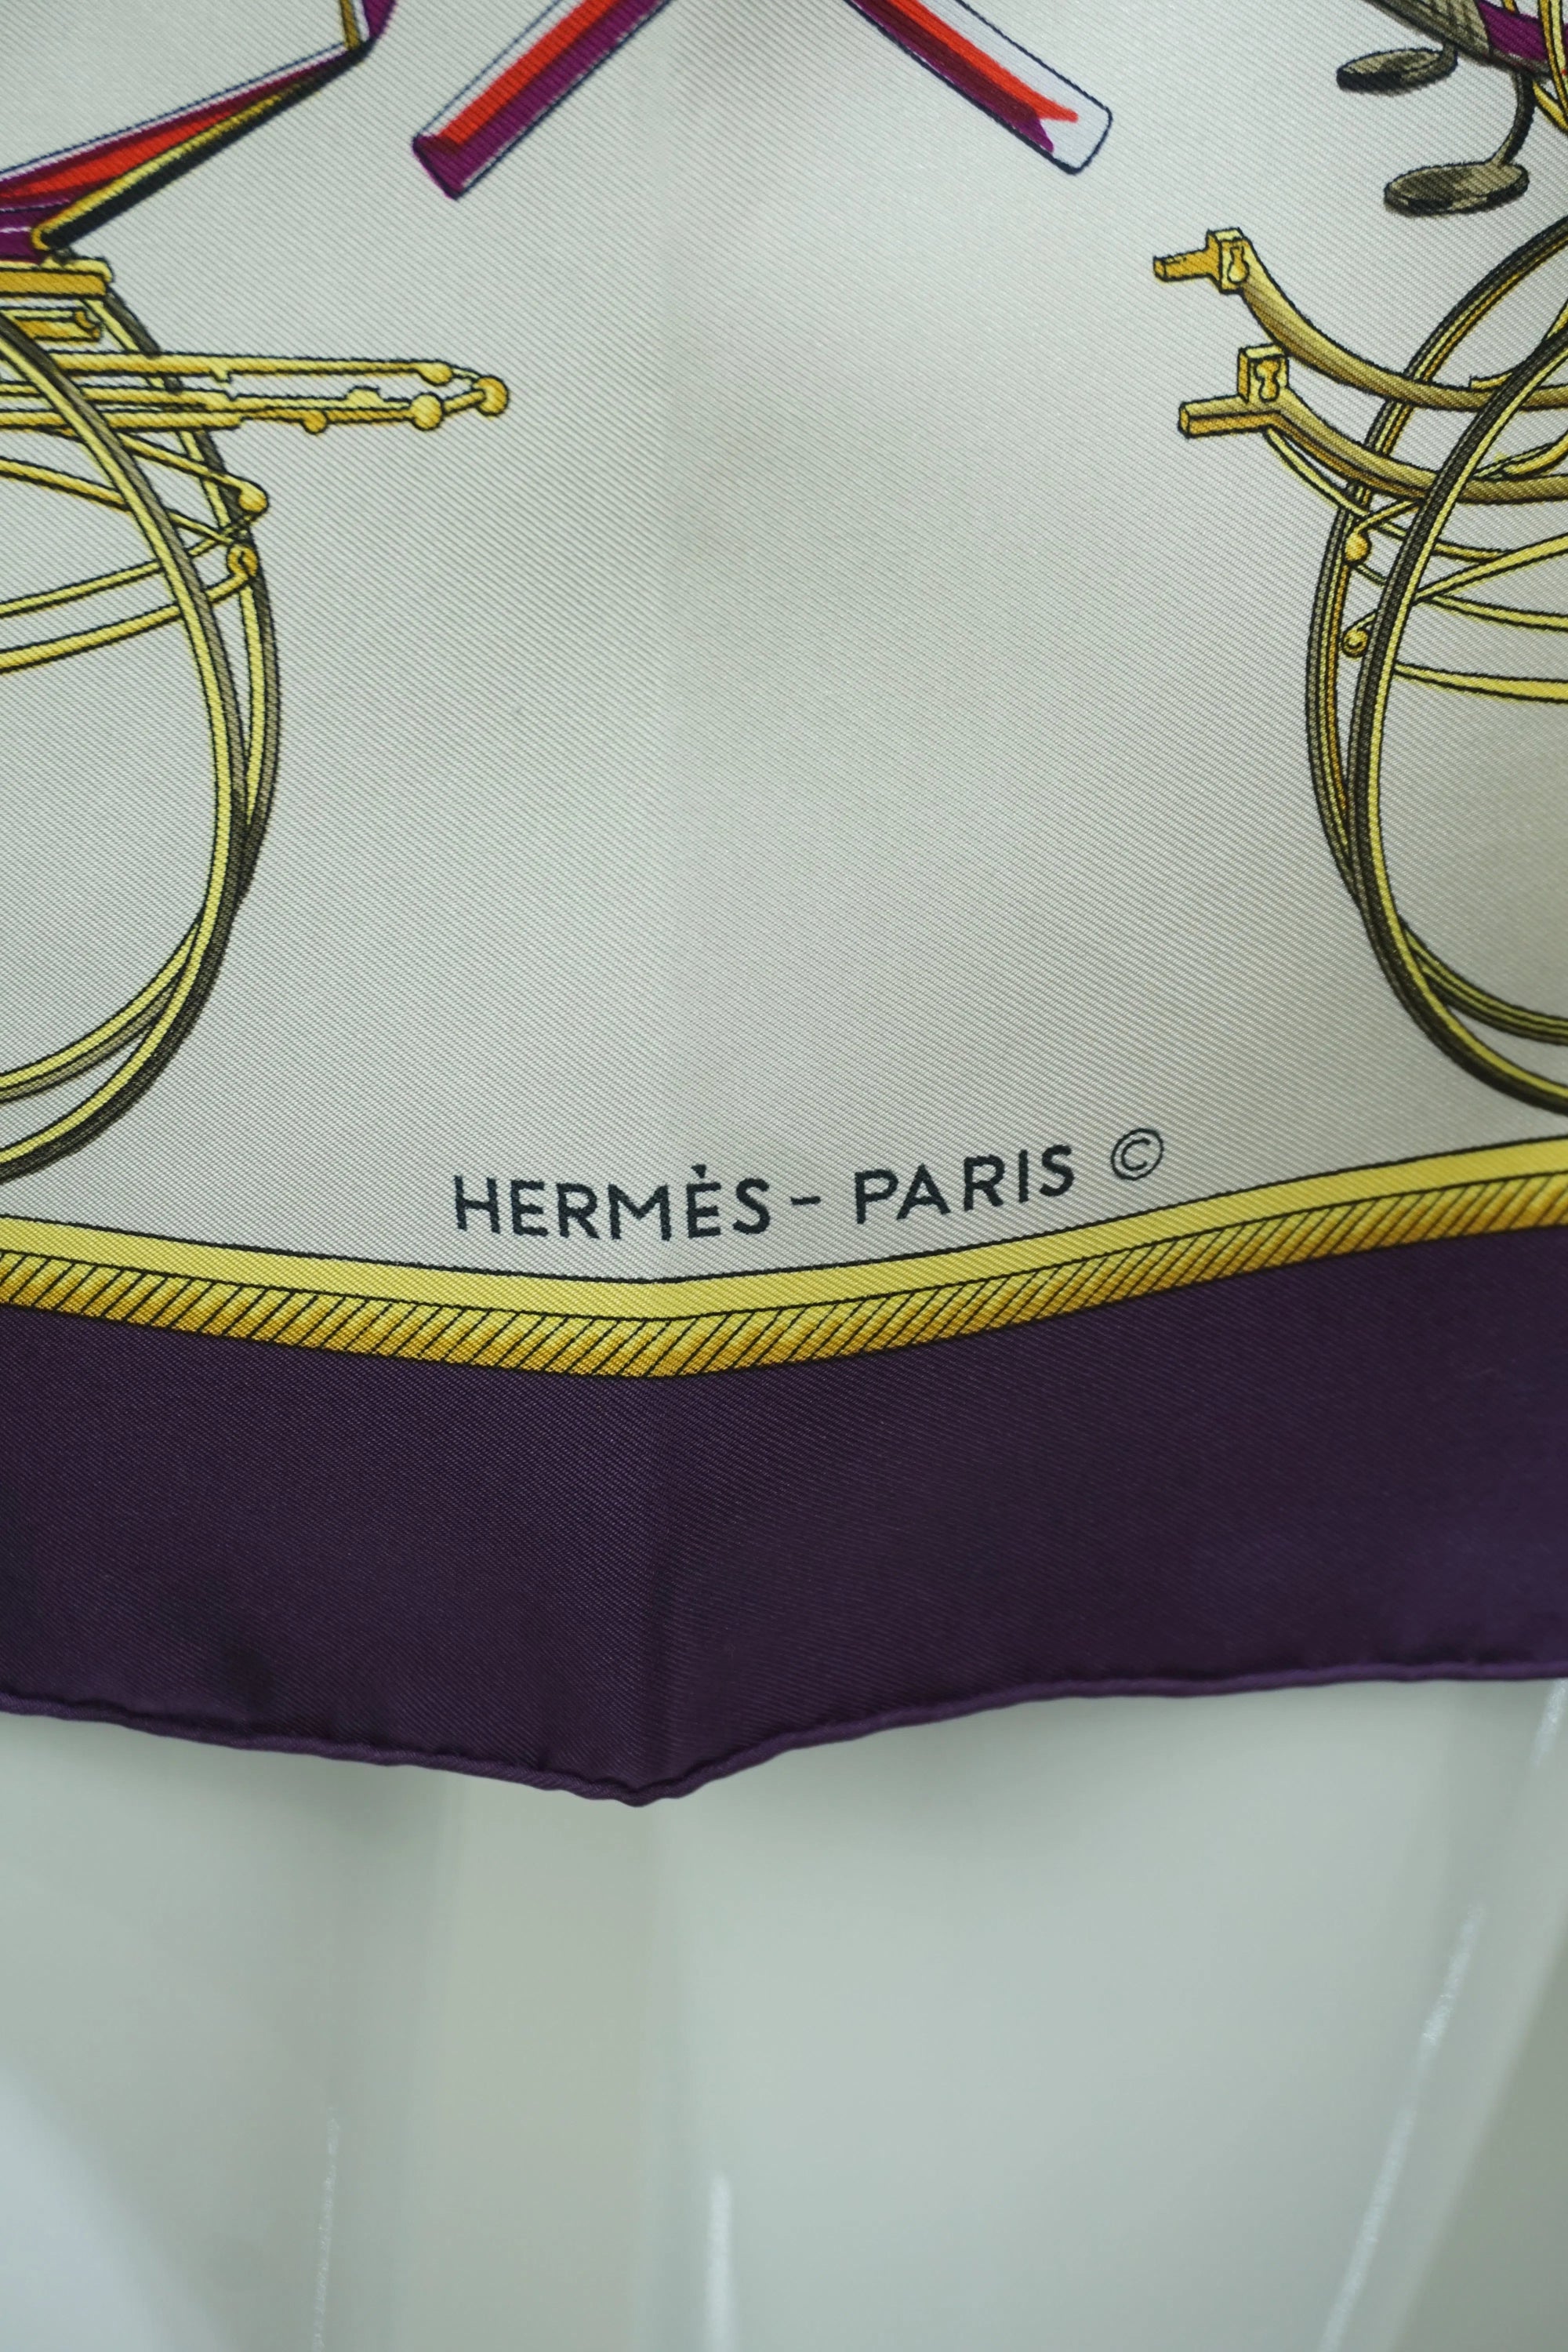 Hermès Le Voitures Transformation Silk Scarf 1970's 90cm